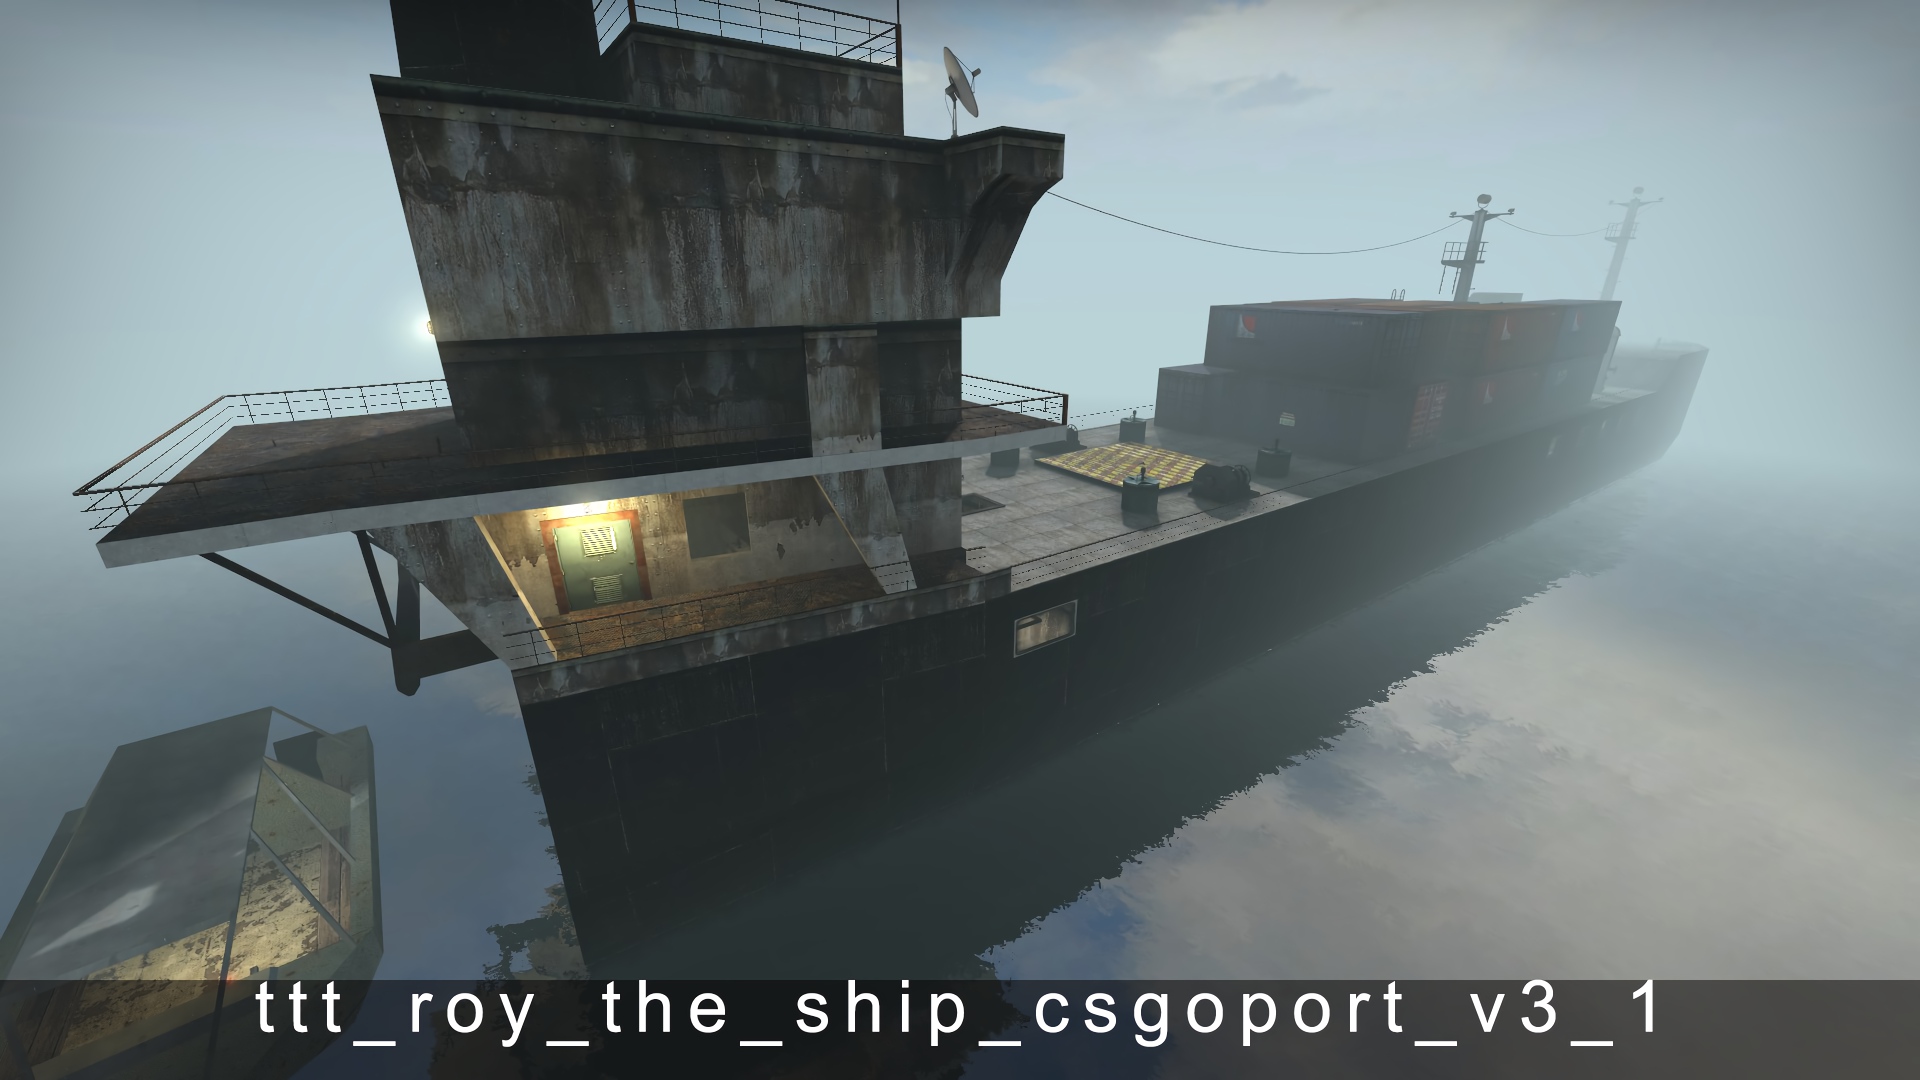 ttt_roy_the_ship_csgoport_v3_1.jpg